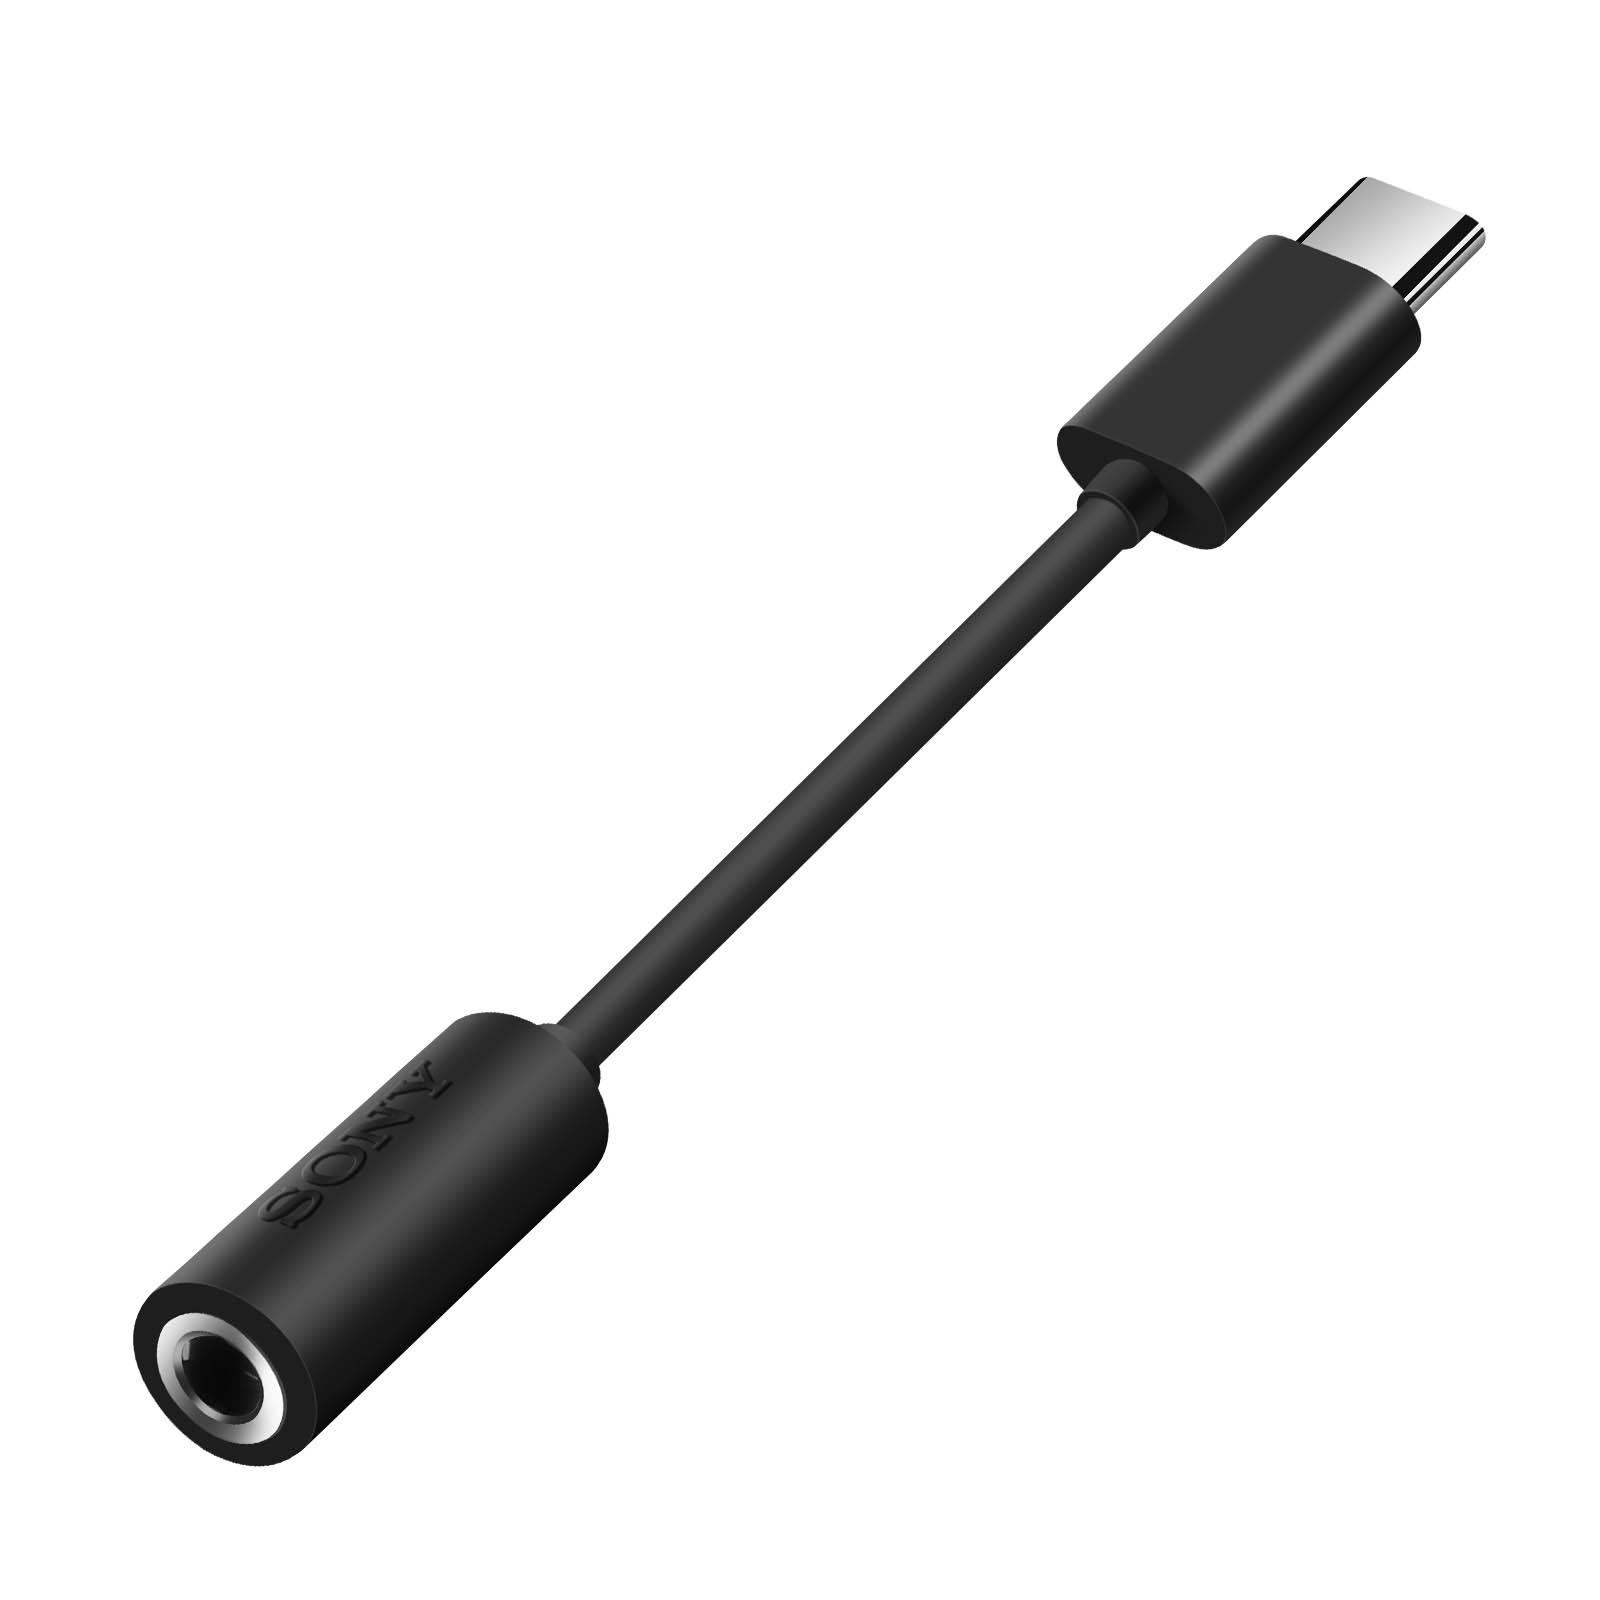 Adaptateur Audio officiel Sony, USB-C mâle vers Jack 3.5mm femelle - Noir -  Français